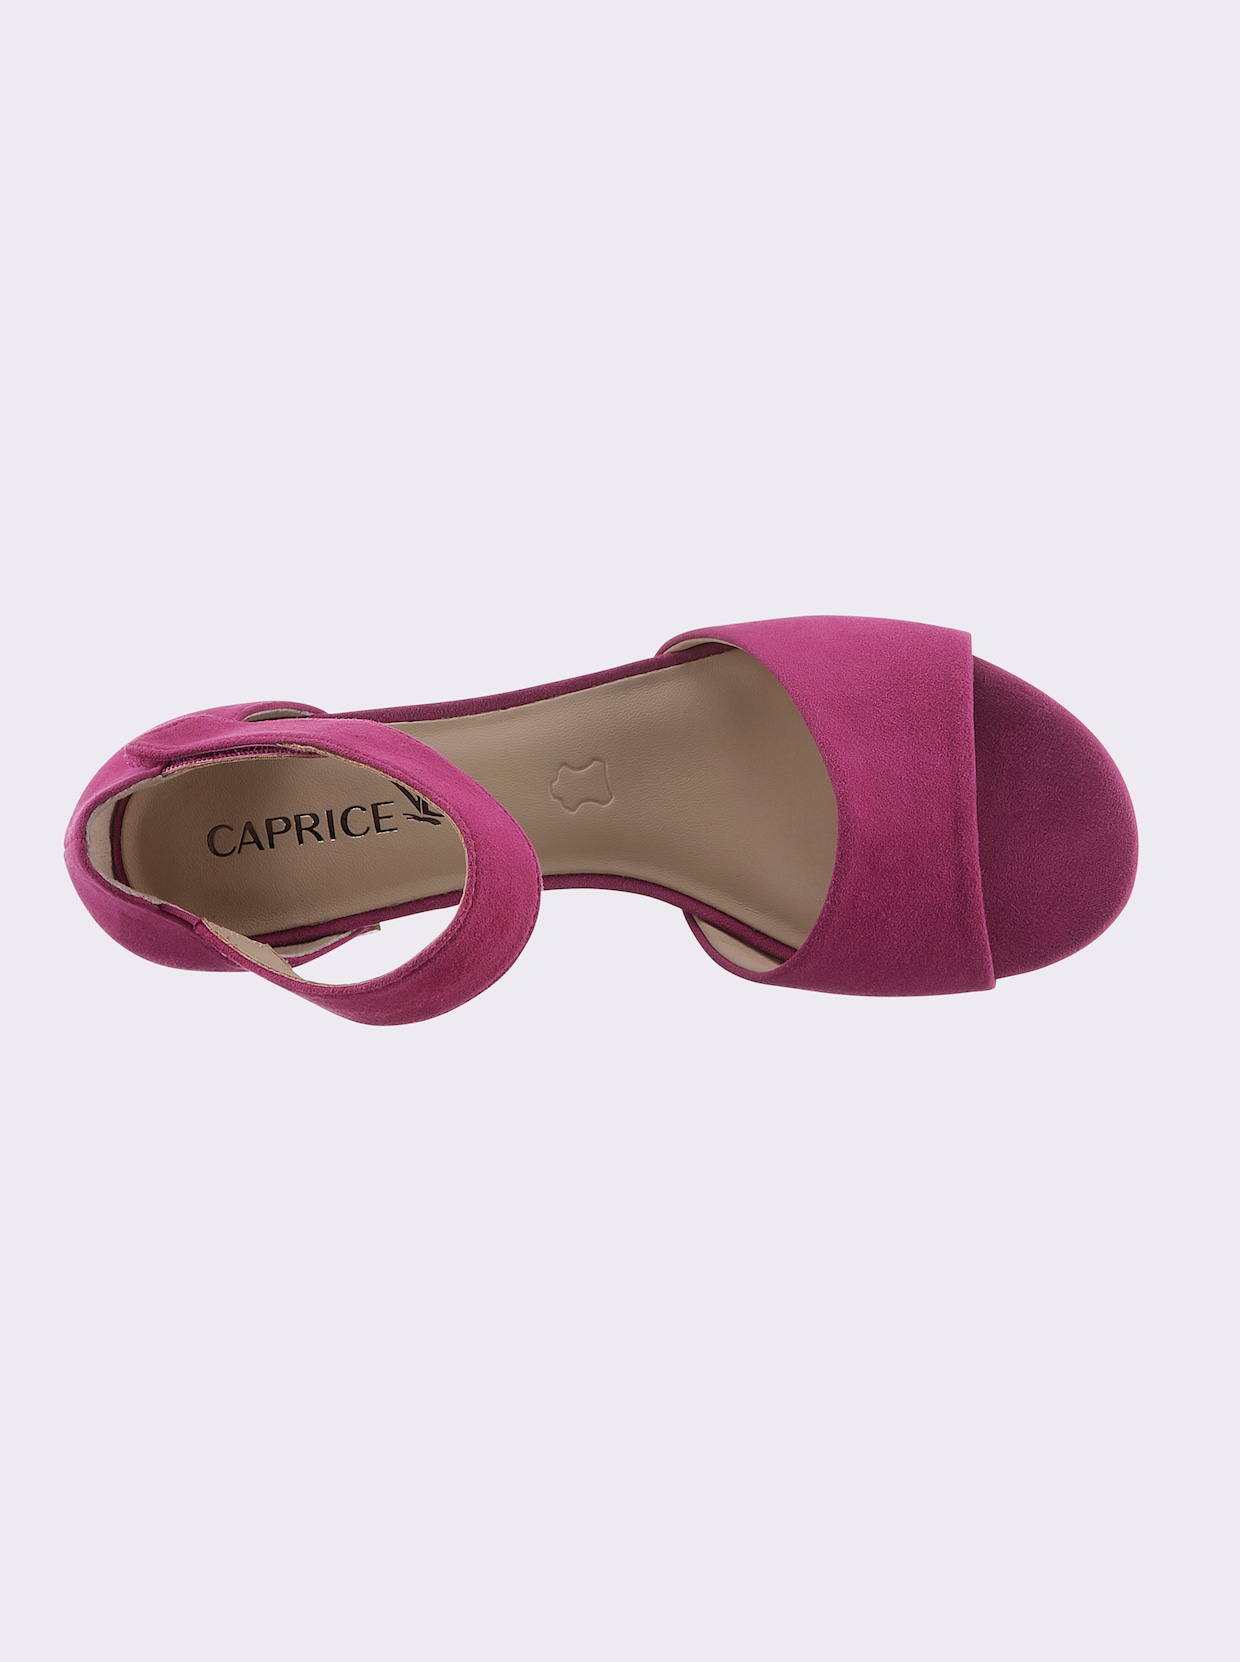 Caprice Sandalette - pink